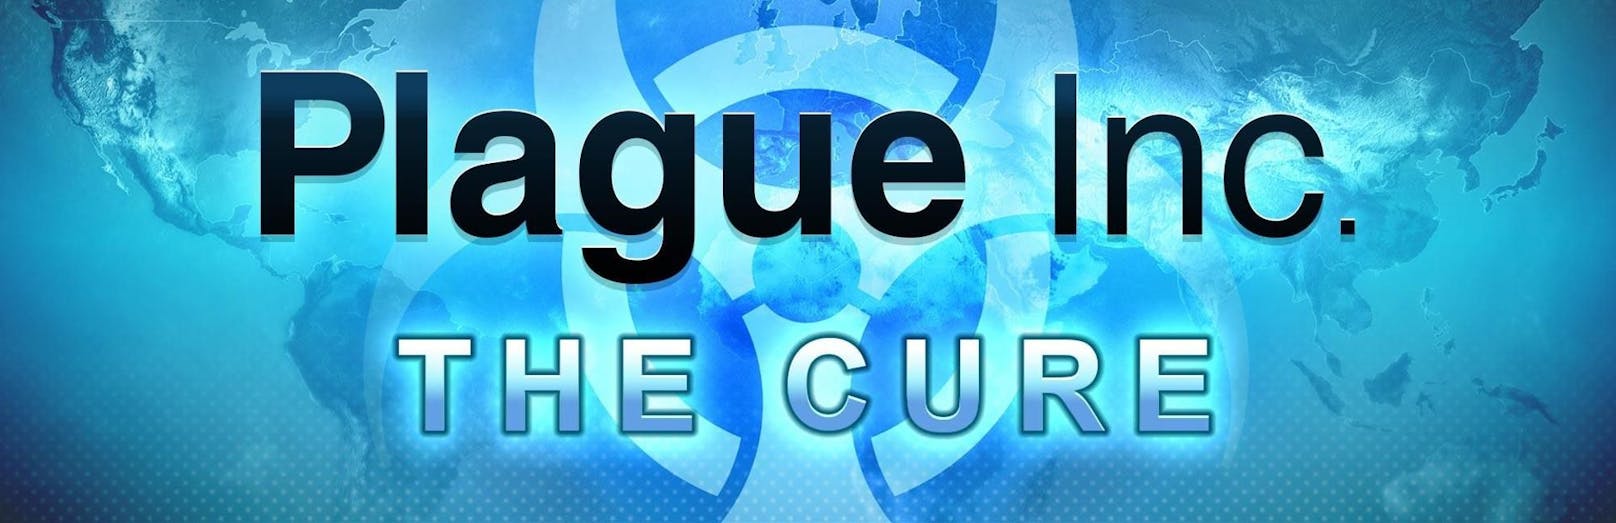 Diese trägt den Titel "Plague Inc.: The Cure".